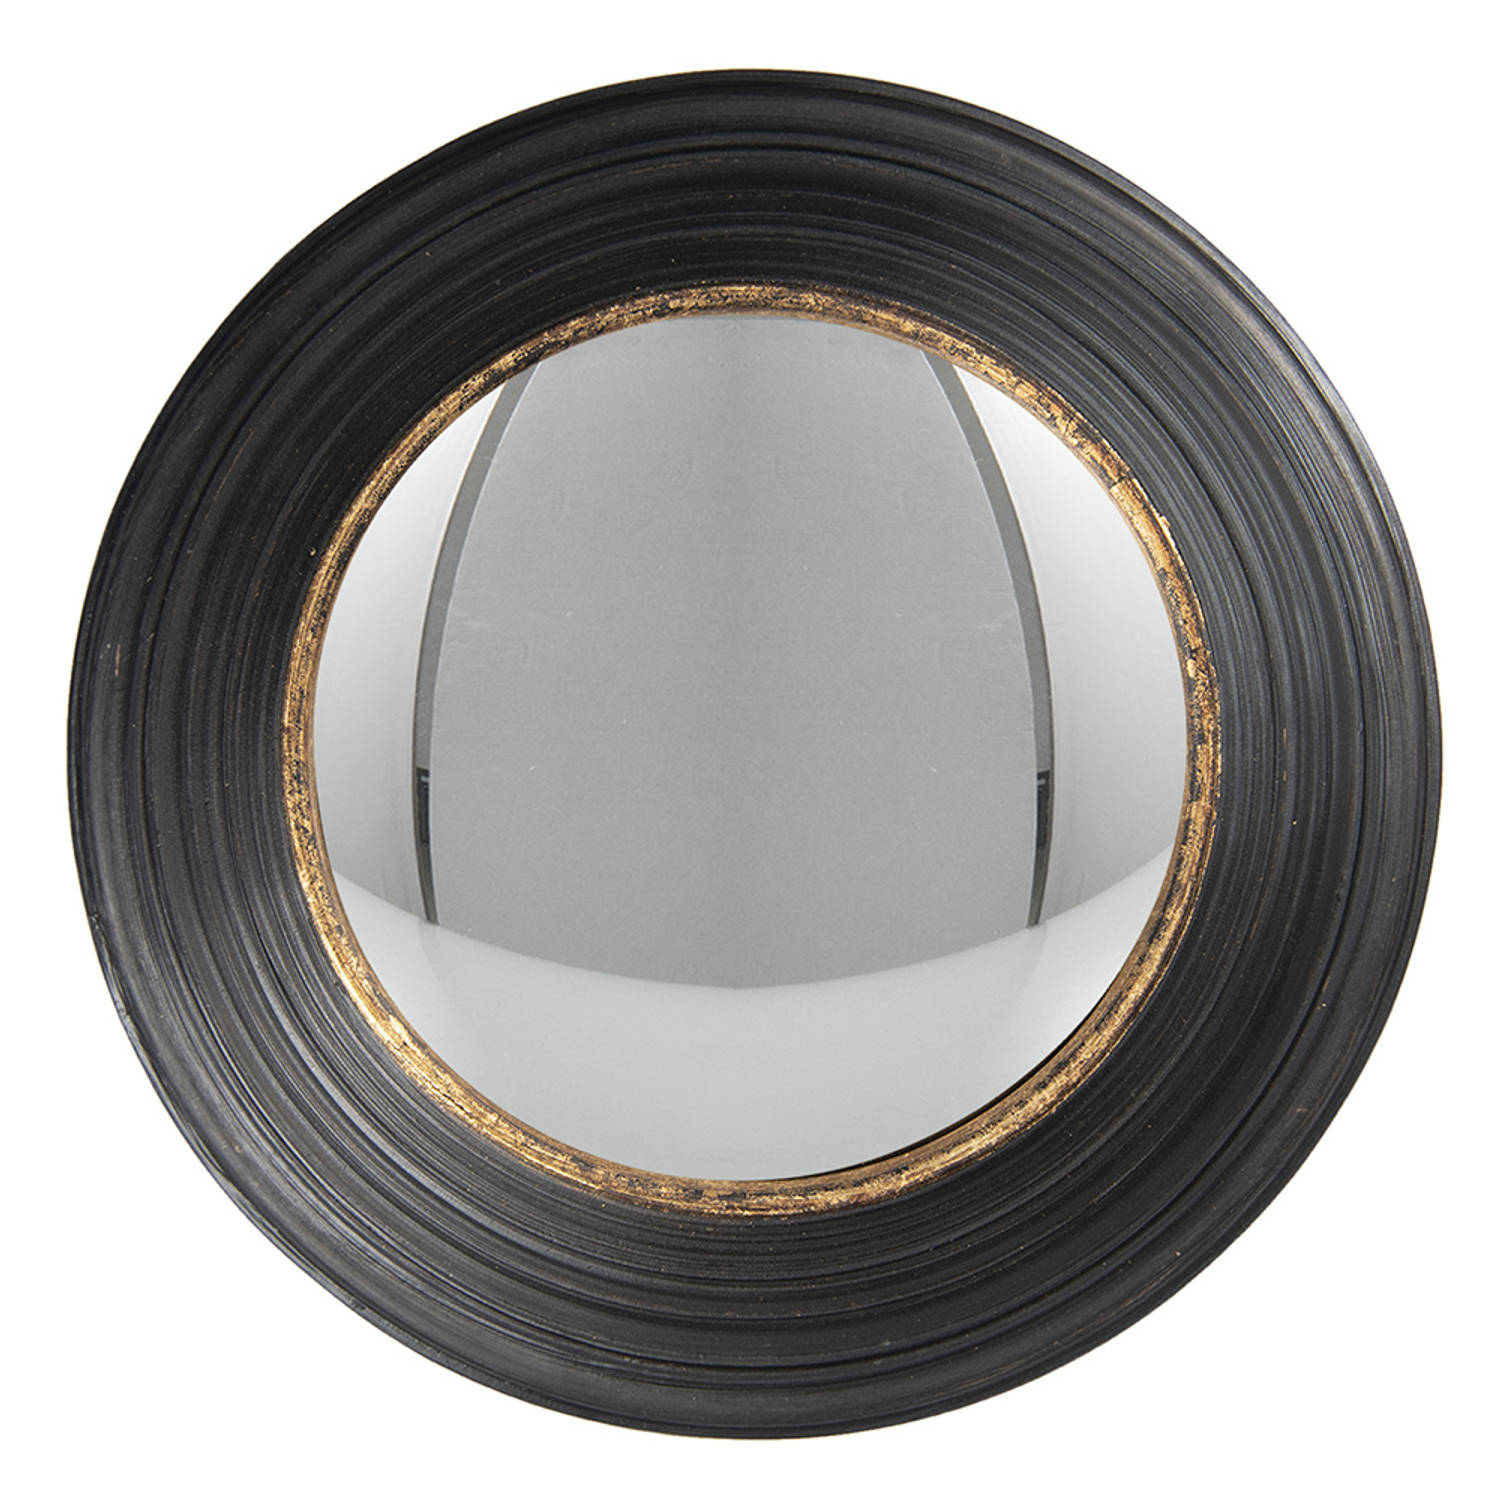 HAES DECO - Bolle ronde Spiegel - Kleur Zwart - Formaat Ø 34x6 cm - Materiaal Polyurethaan ( PU) - Wandspiegel, Spiegel rond, Convex Glas